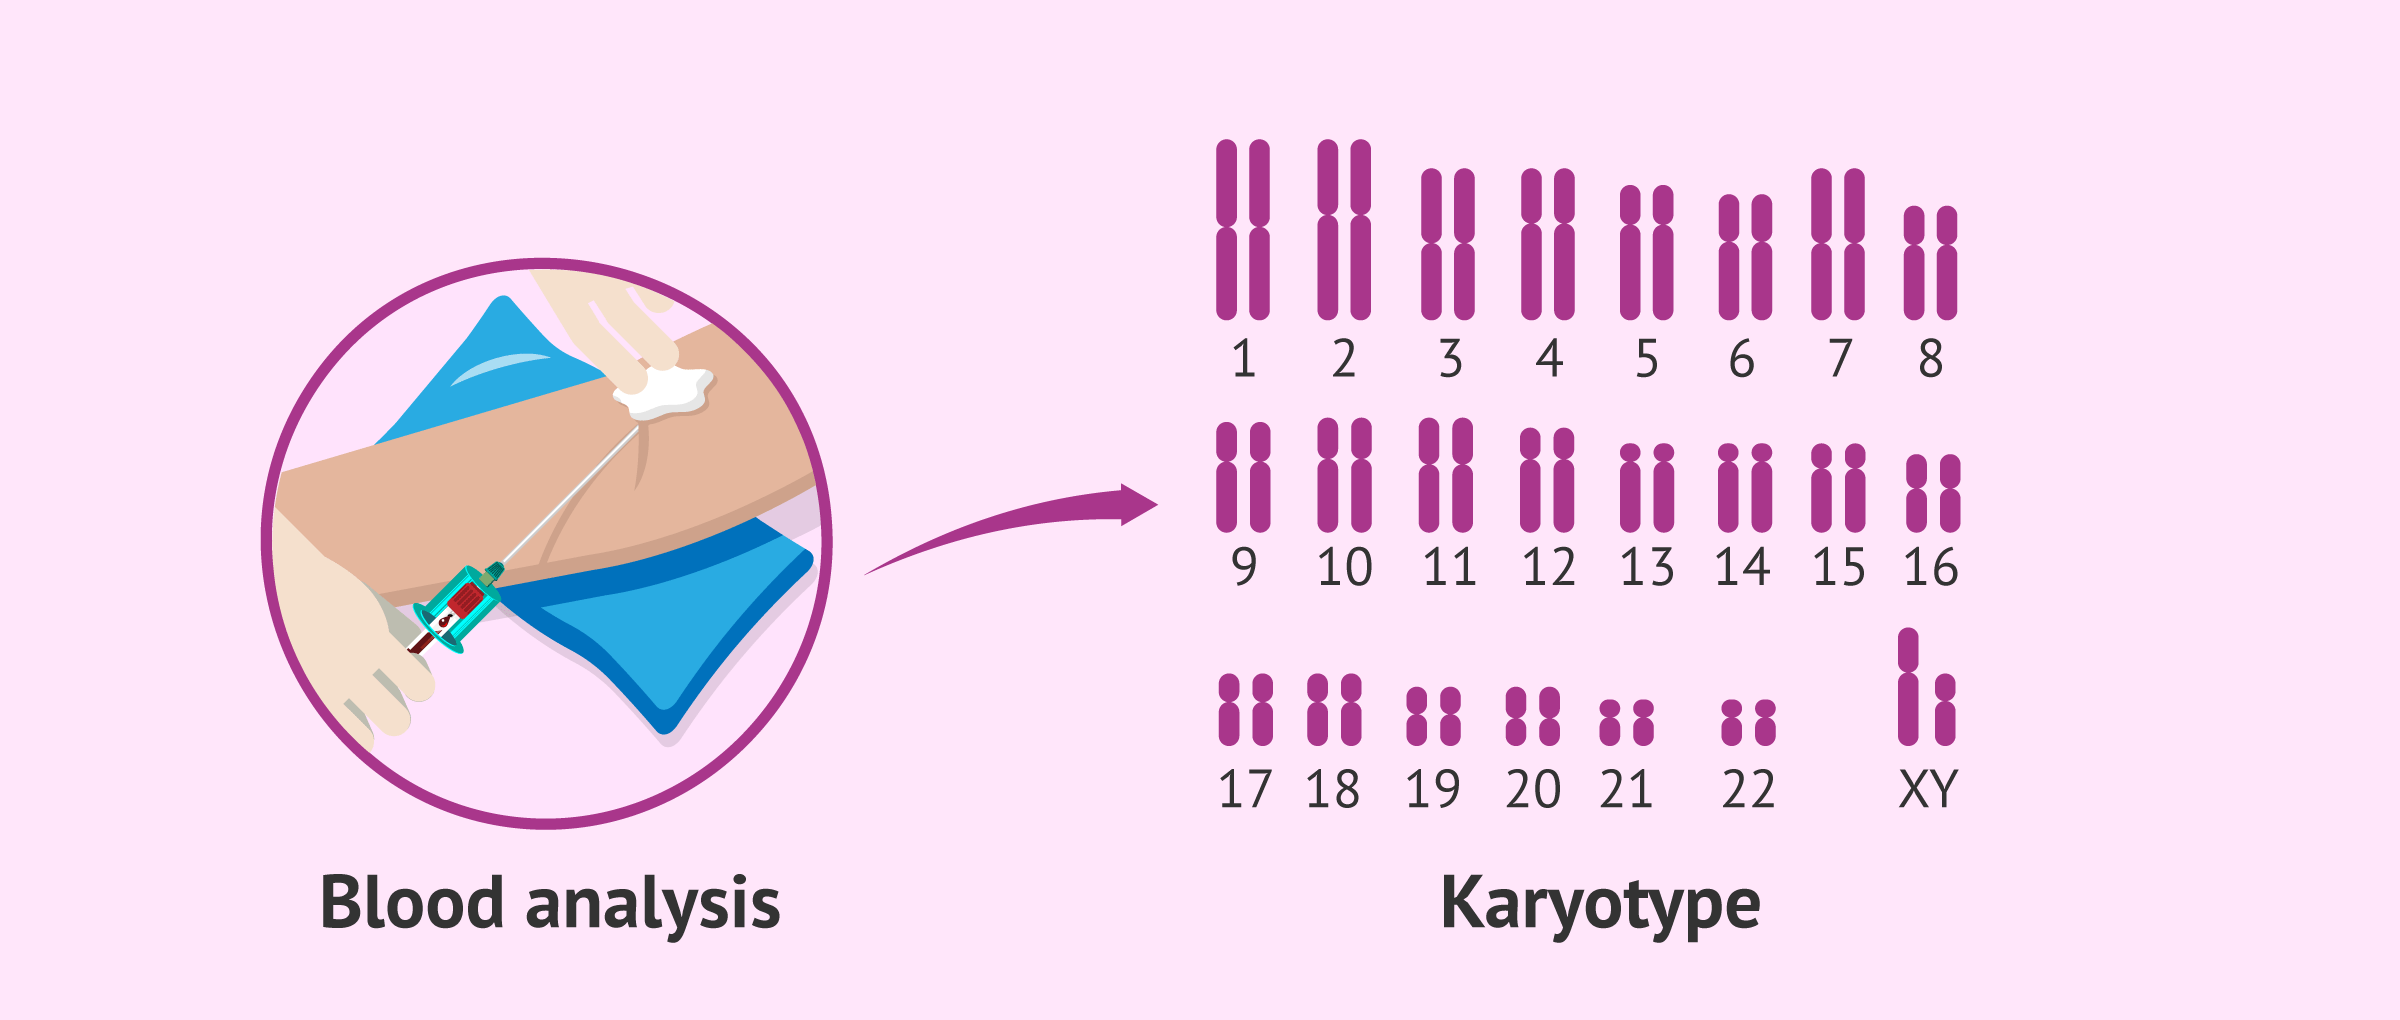 Study of the karyotype in men